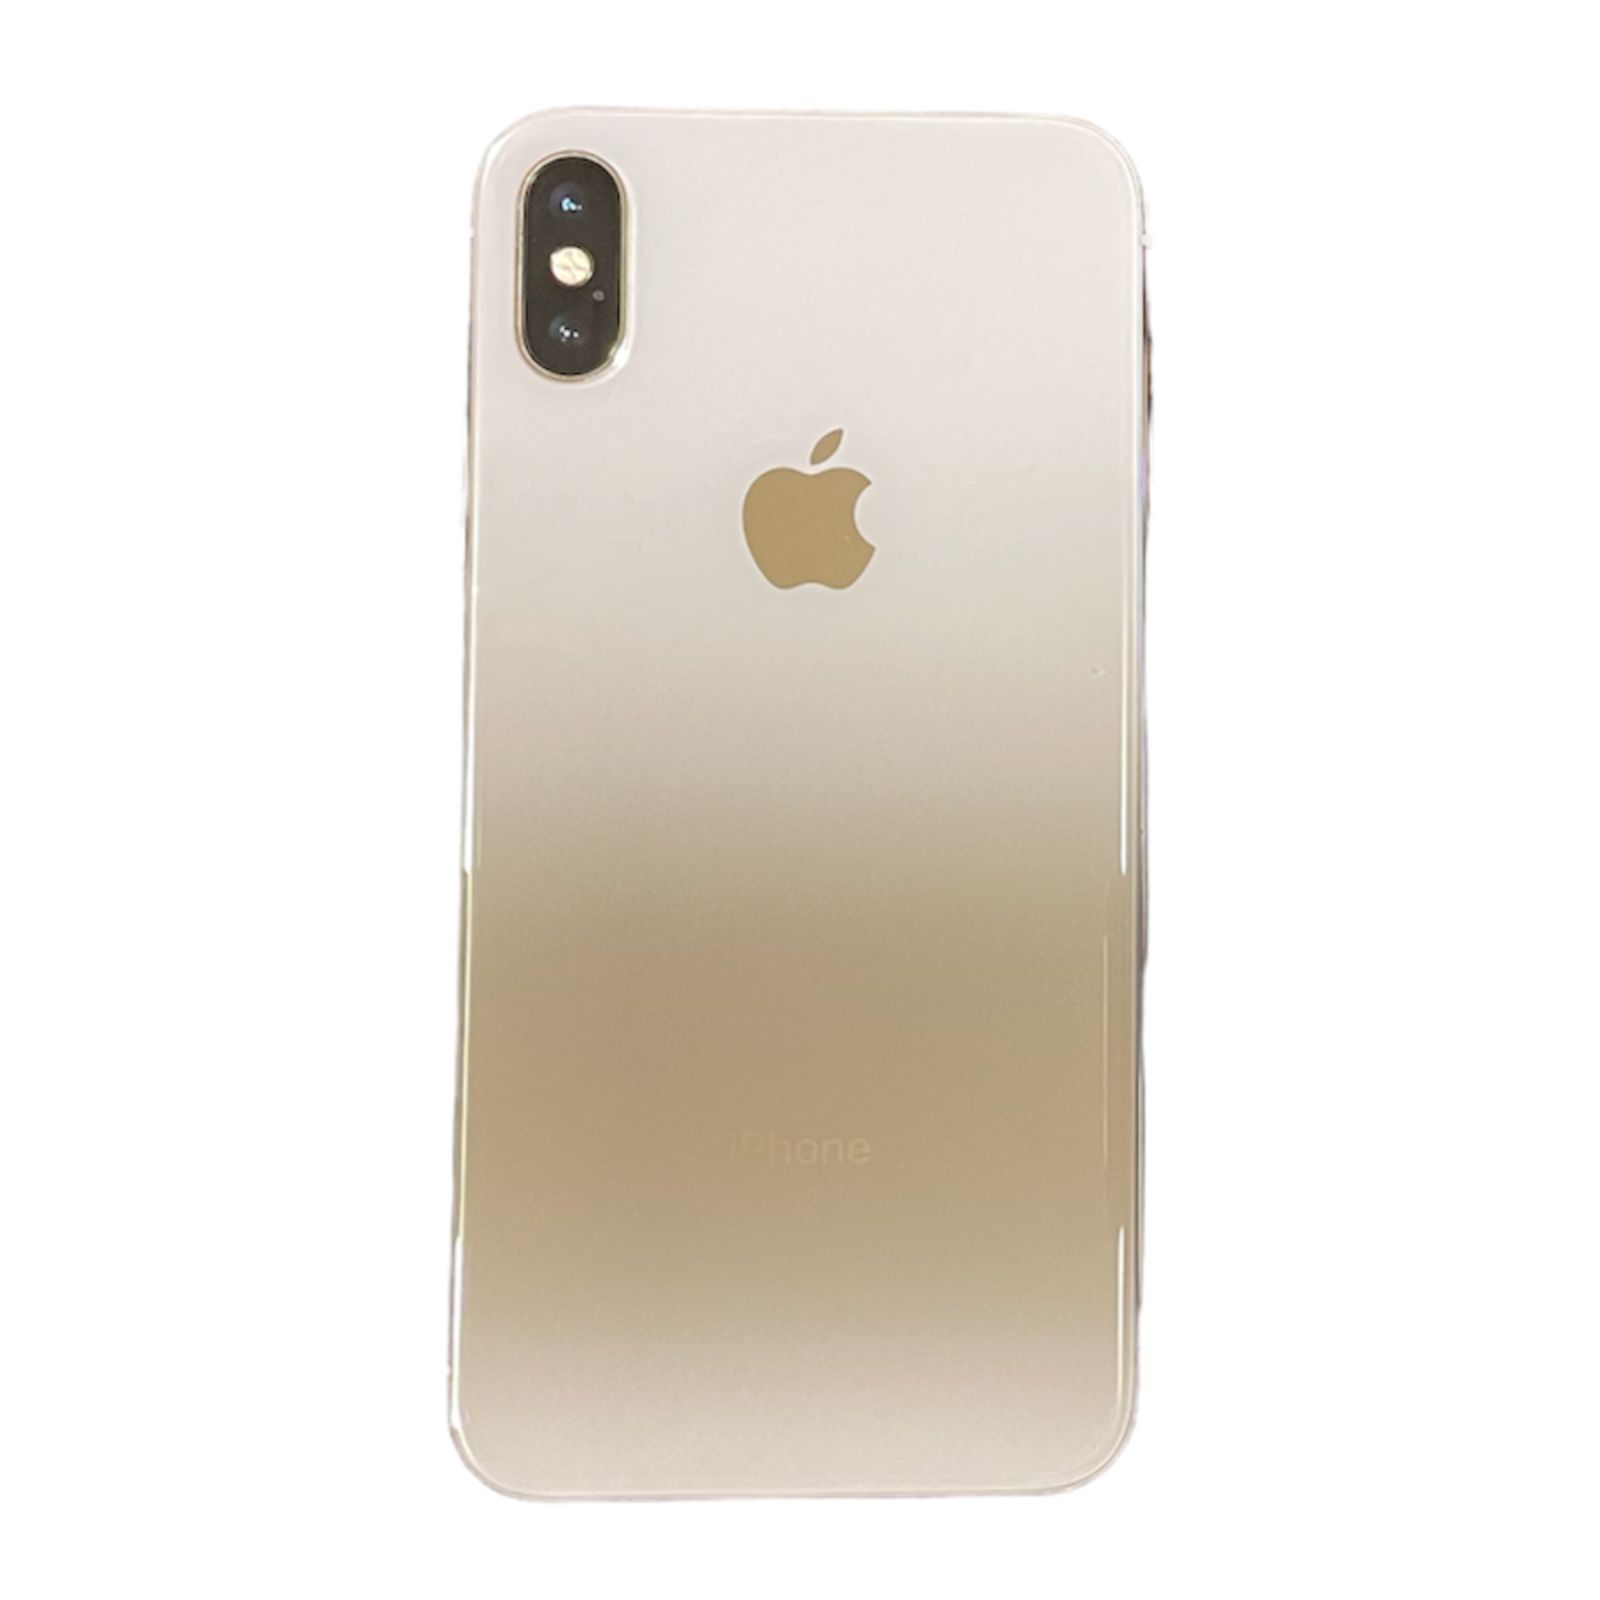 アップル iPhone X 256GB シルバー SIMフリー - 携帯電話本体